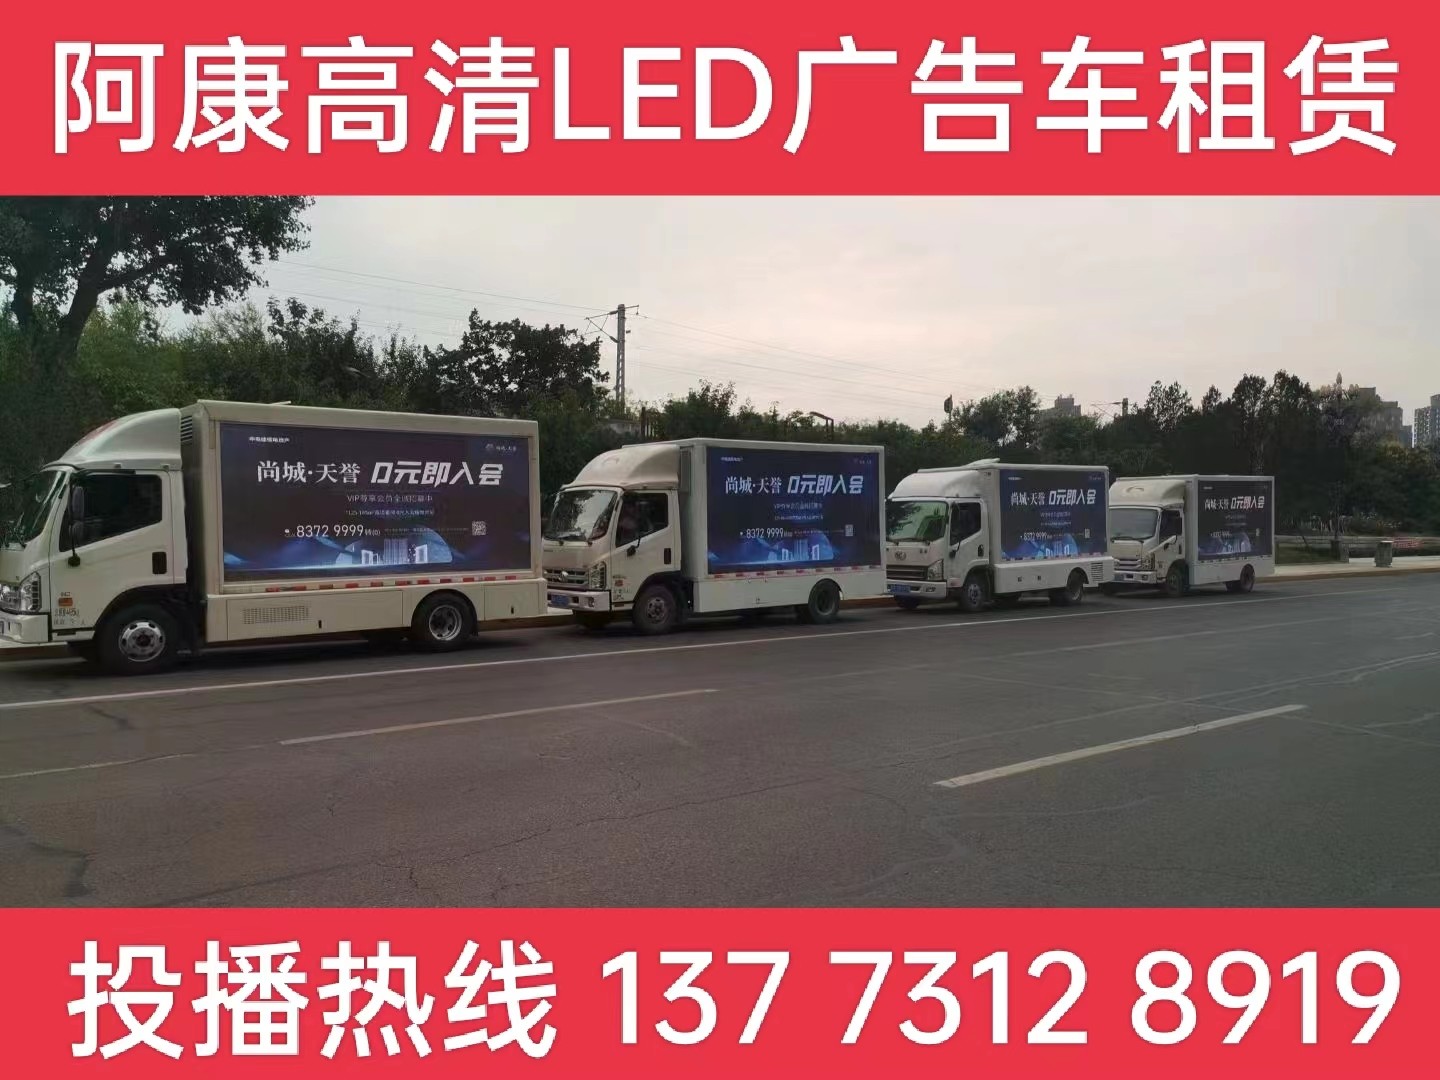 德清县LED广告车出租公司